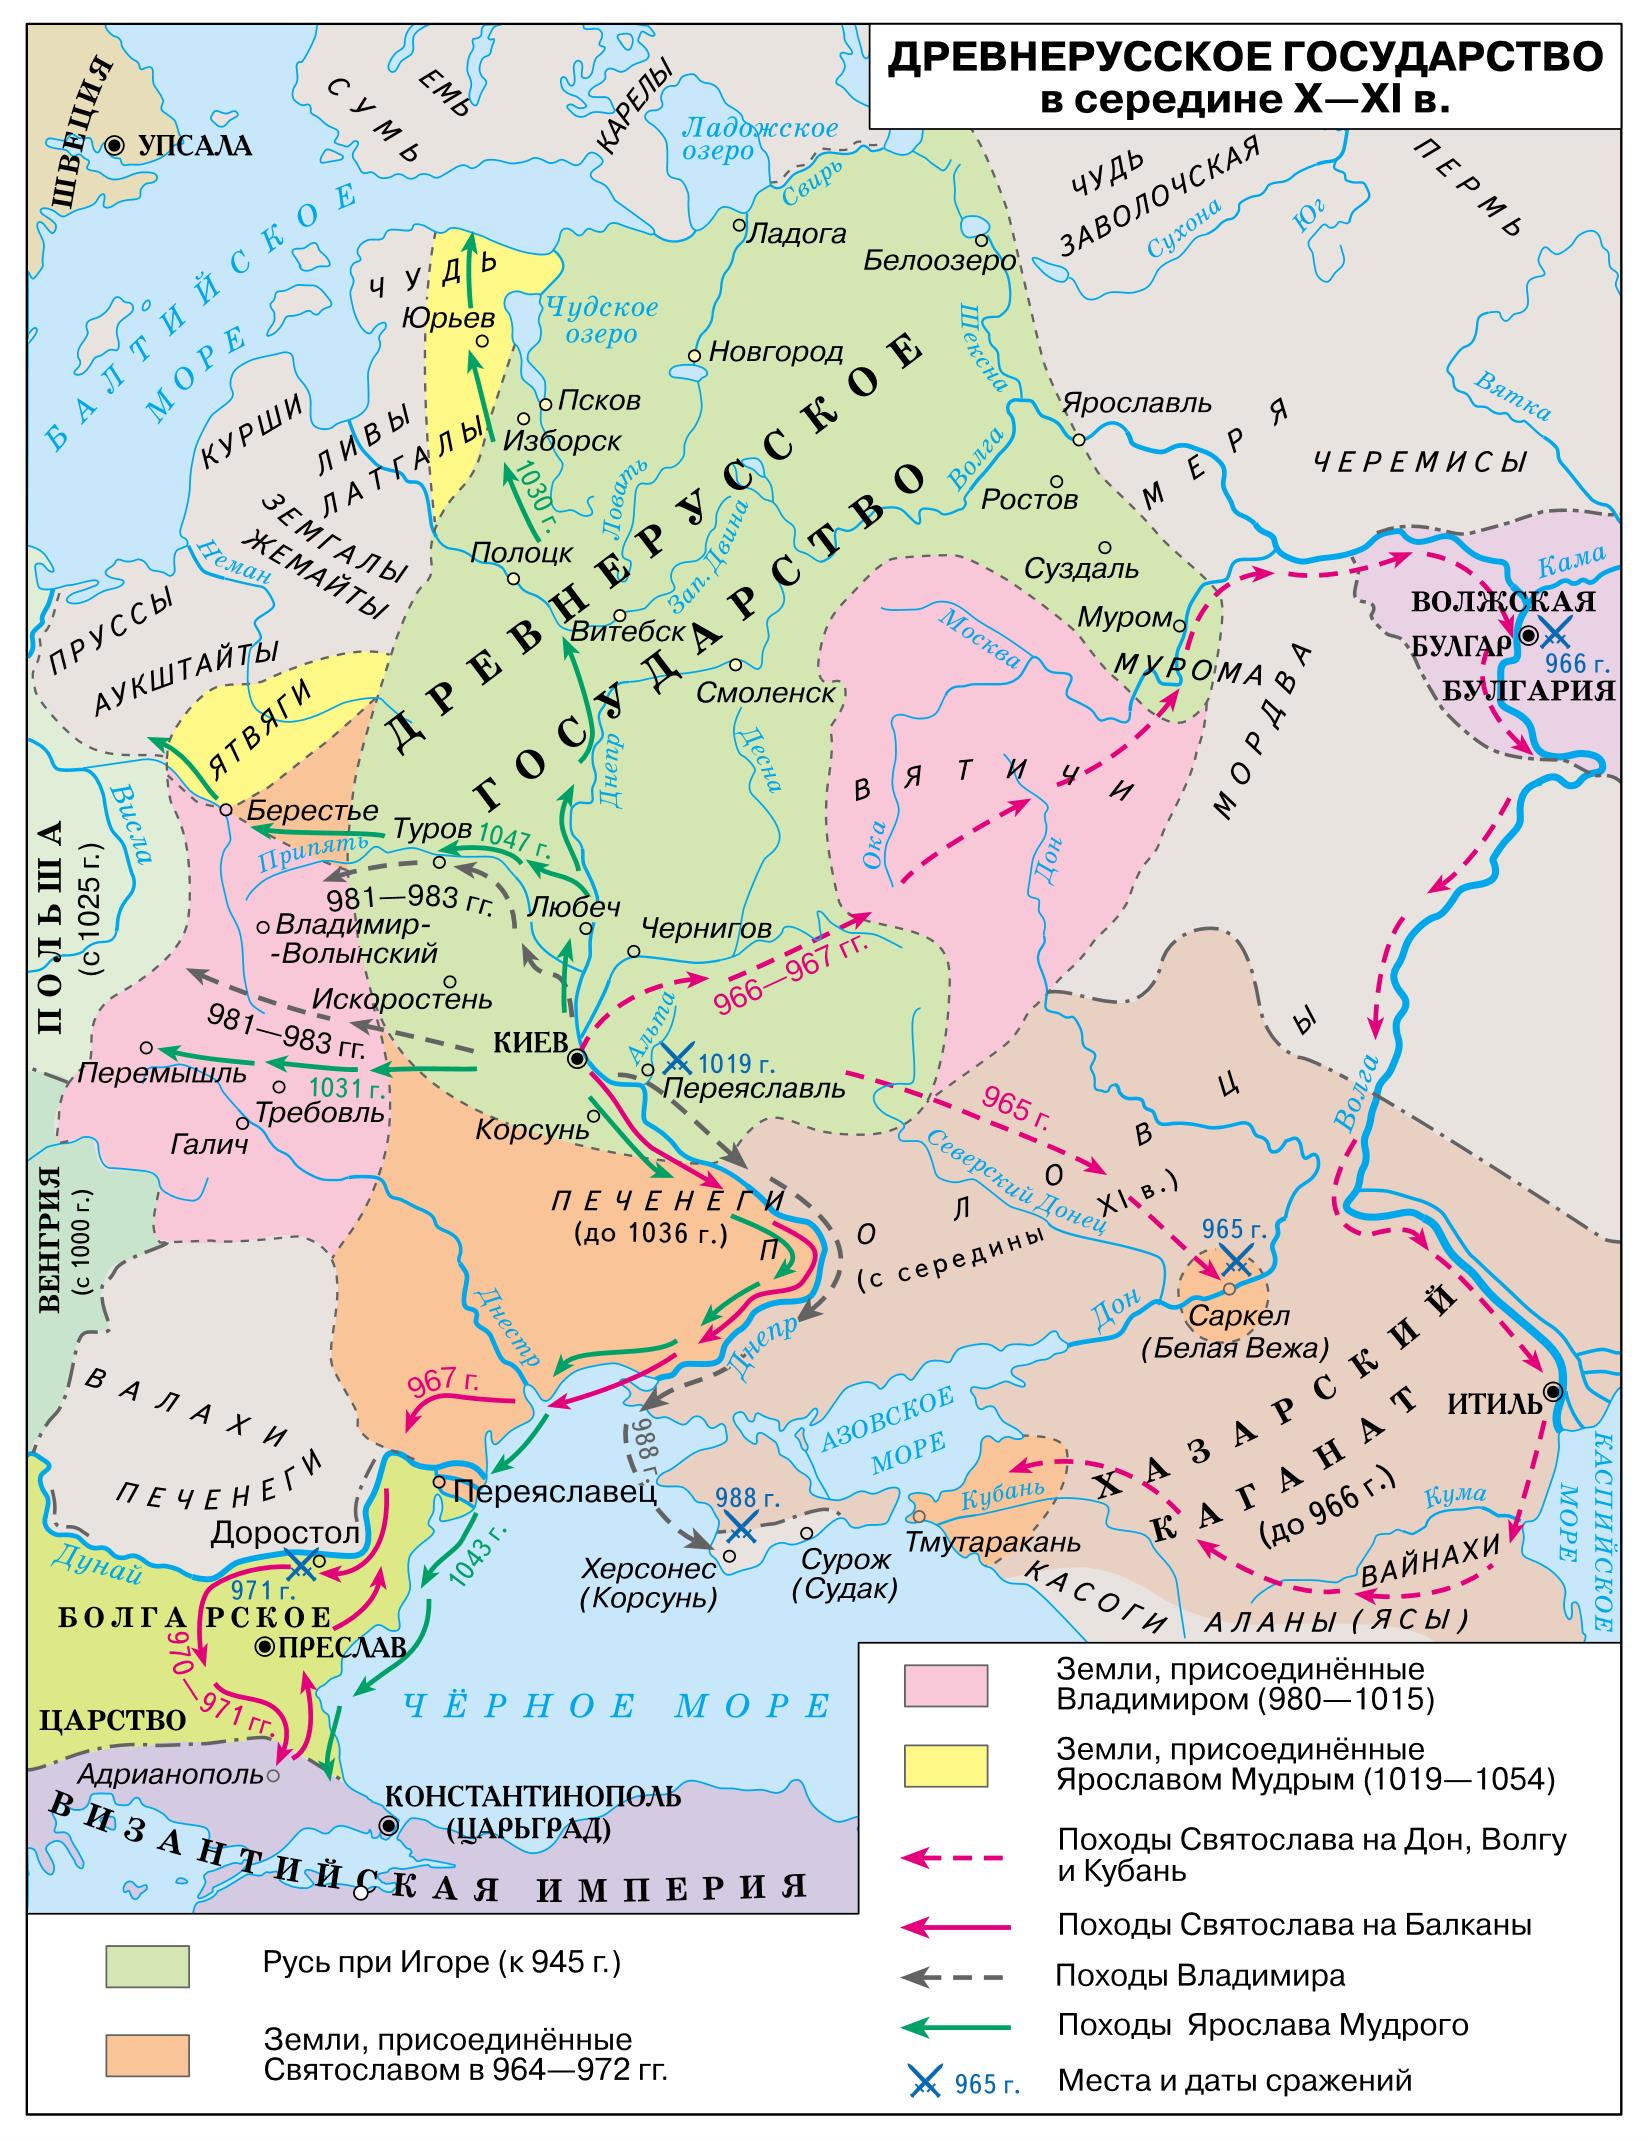 История Юго-Западной Руси, часть II. Волынская земля в X-XI веках